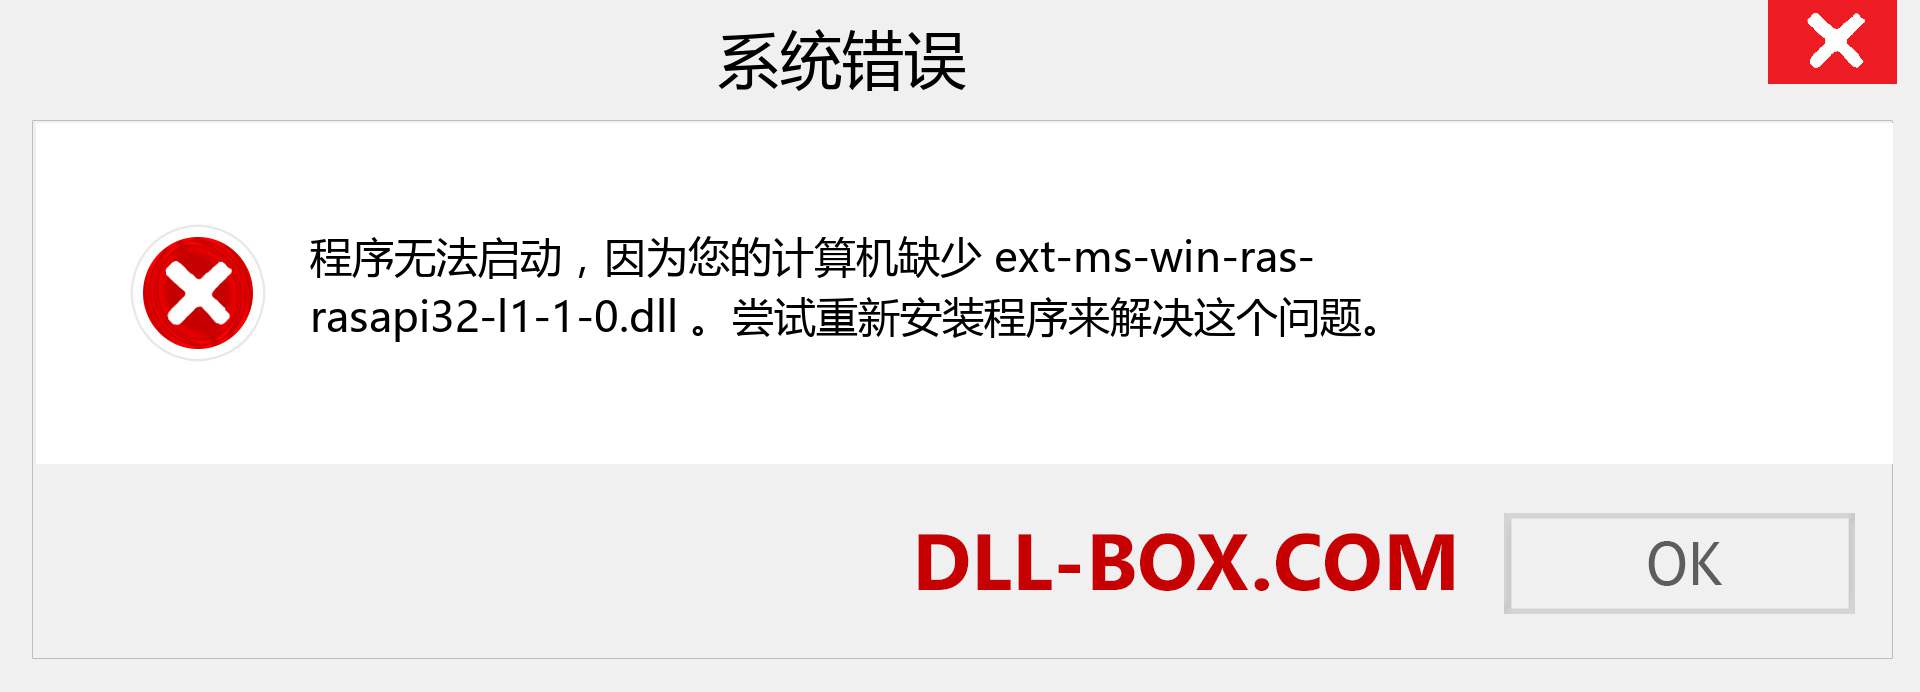 ext-ms-win-ras-rasapi32-l1-1-0.dll 文件丢失？。 适用于 Windows 7、8、10 的下载 - 修复 Windows、照片、图像上的 ext-ms-win-ras-rasapi32-l1-1-0 dll 丢失错误